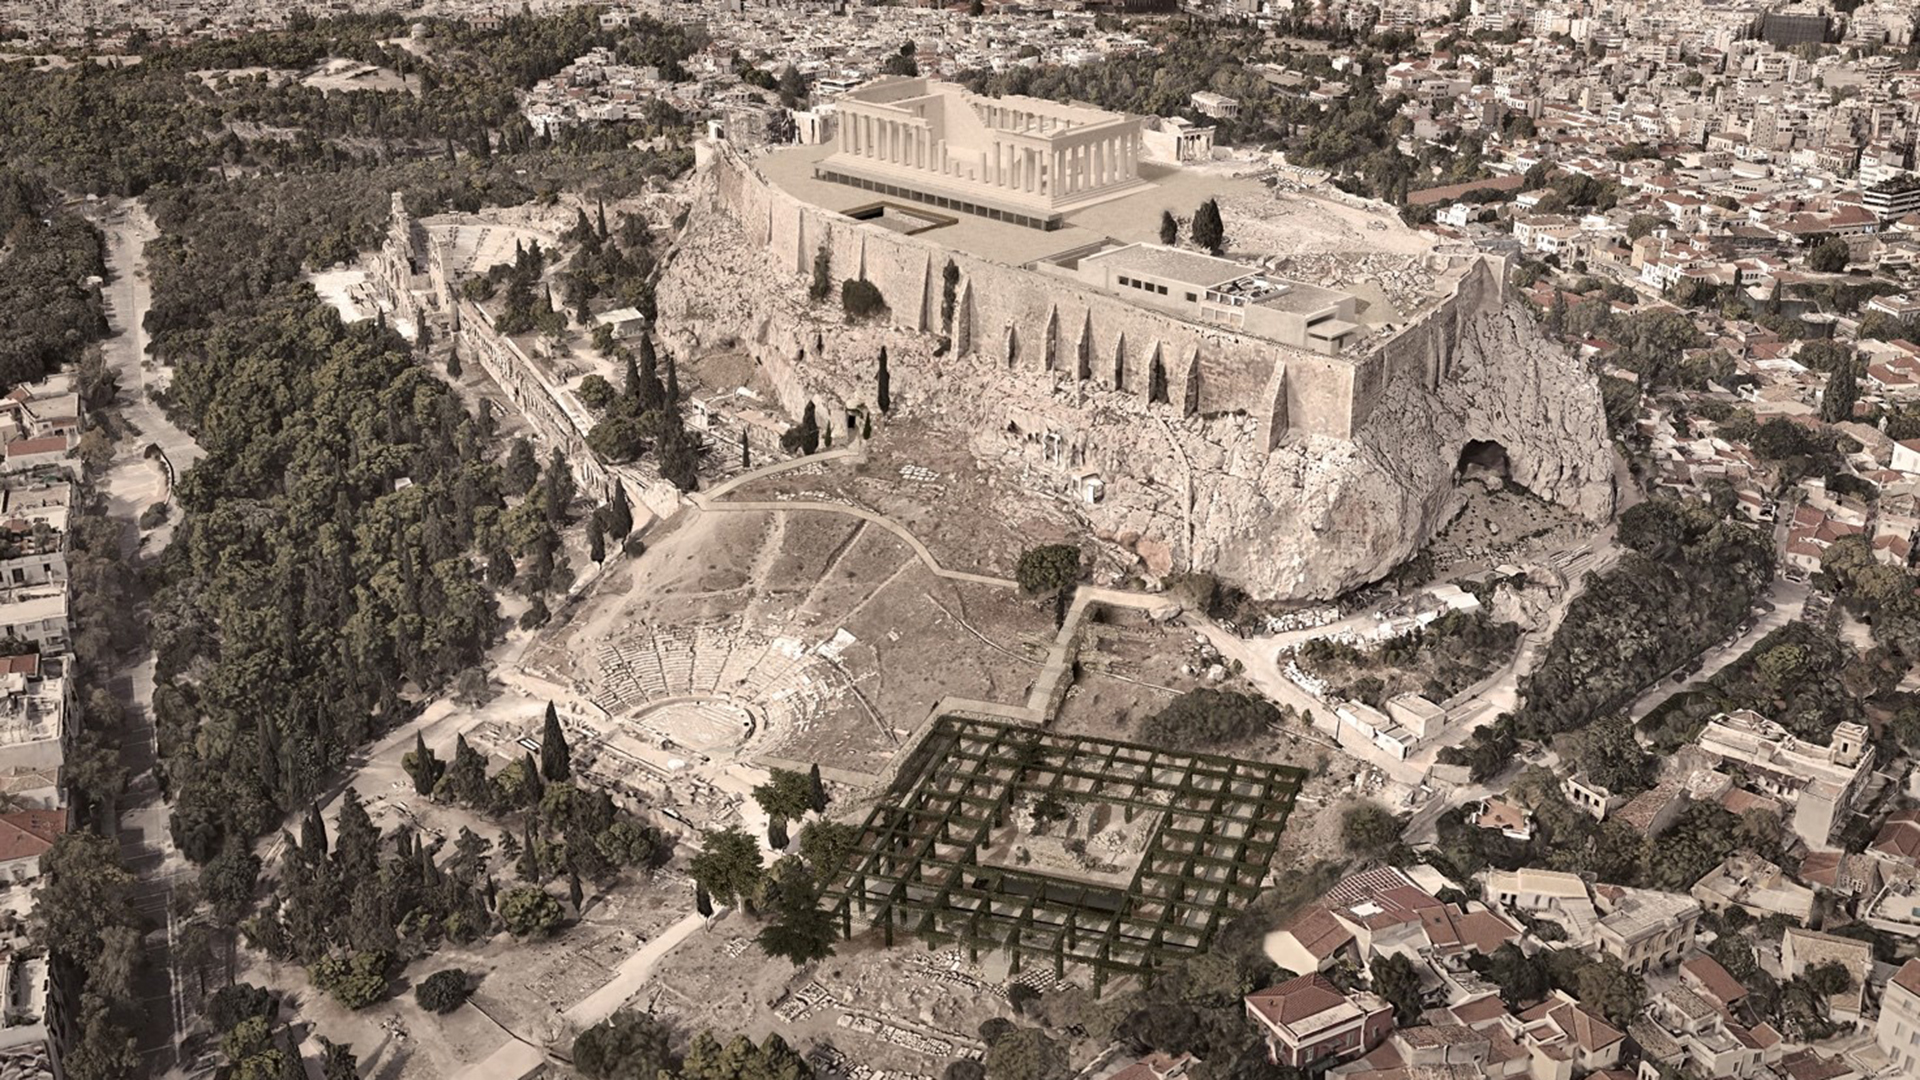 Elaborazione grafica del progetto vincitore con vista dall'alto dell'acropoli di Atene